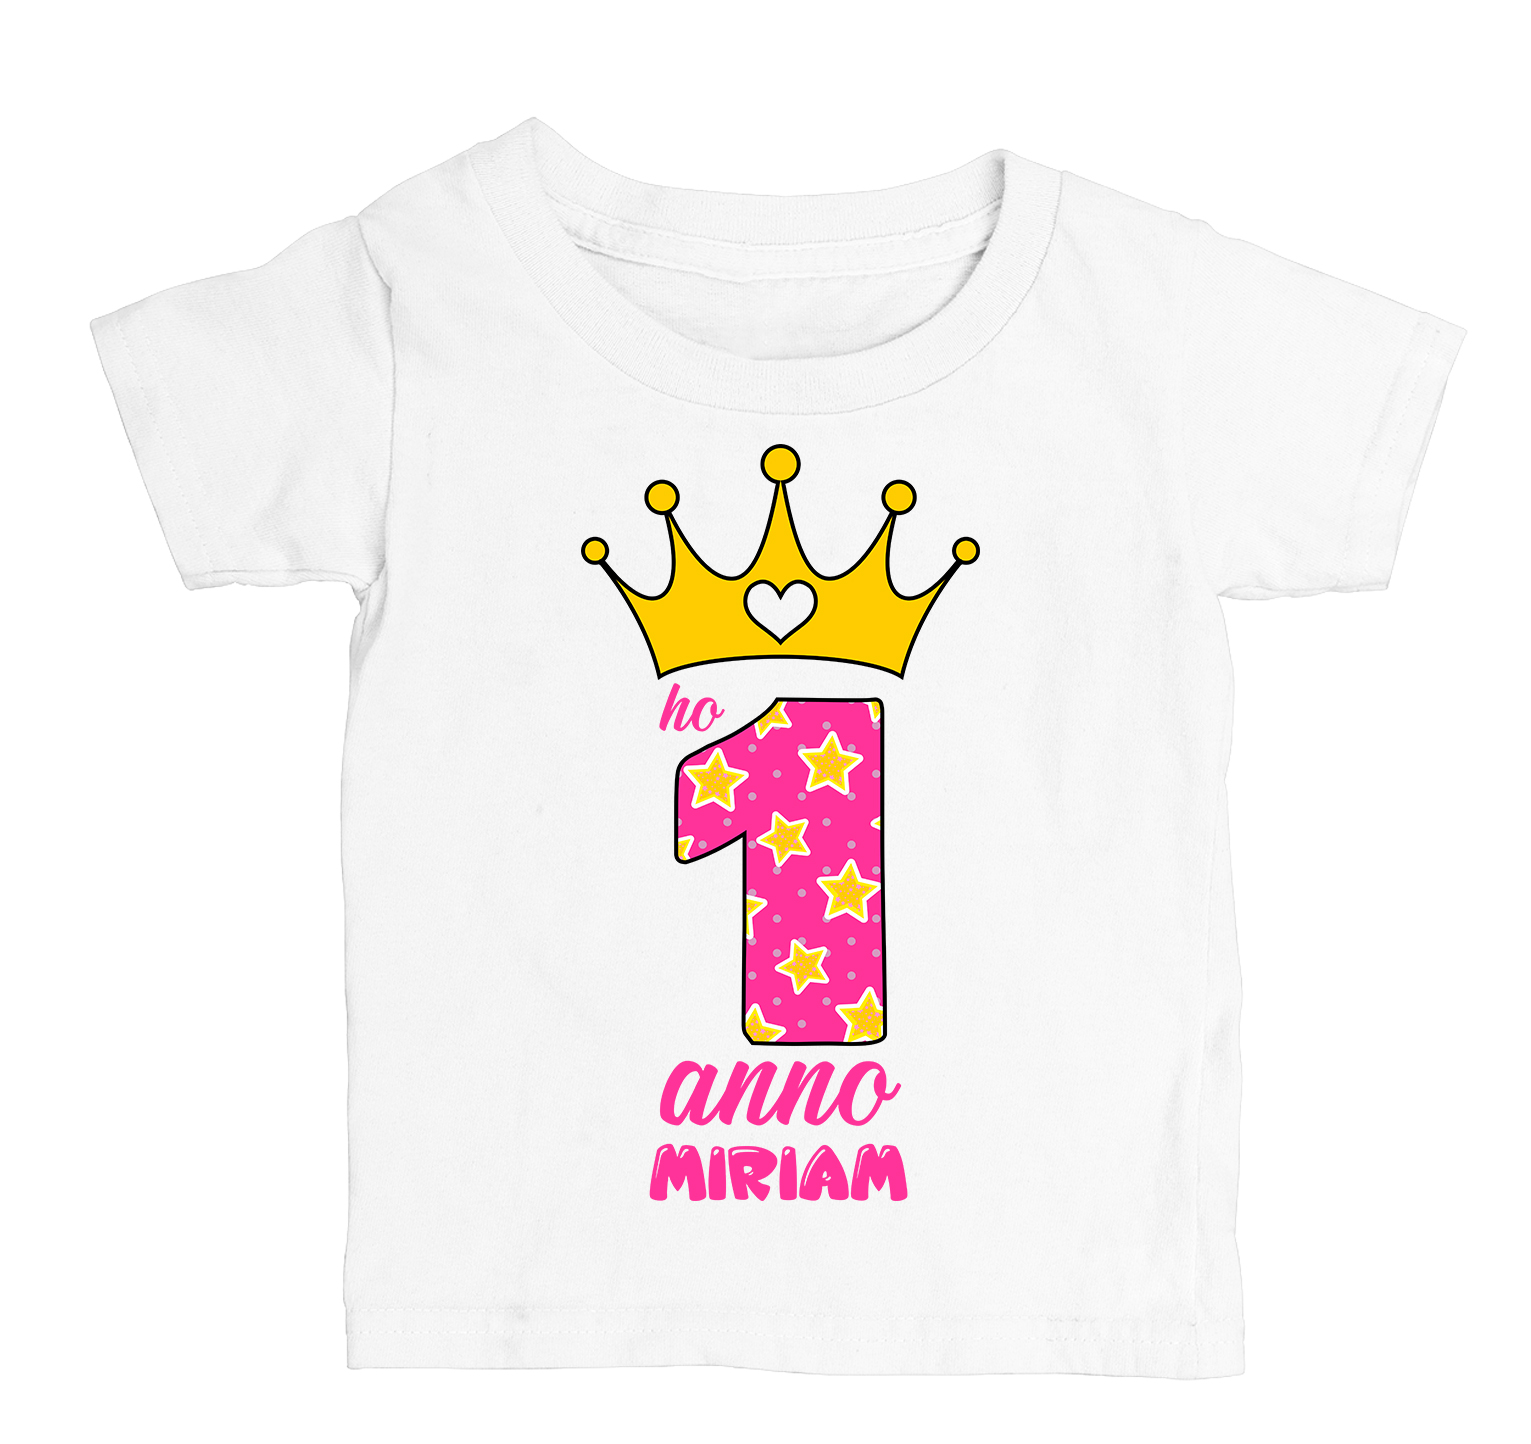 4 5 BABY Compleanno T-shirt Uno due 2 Bambino PERSONALIZZATA NOME NUMERO 3 1 